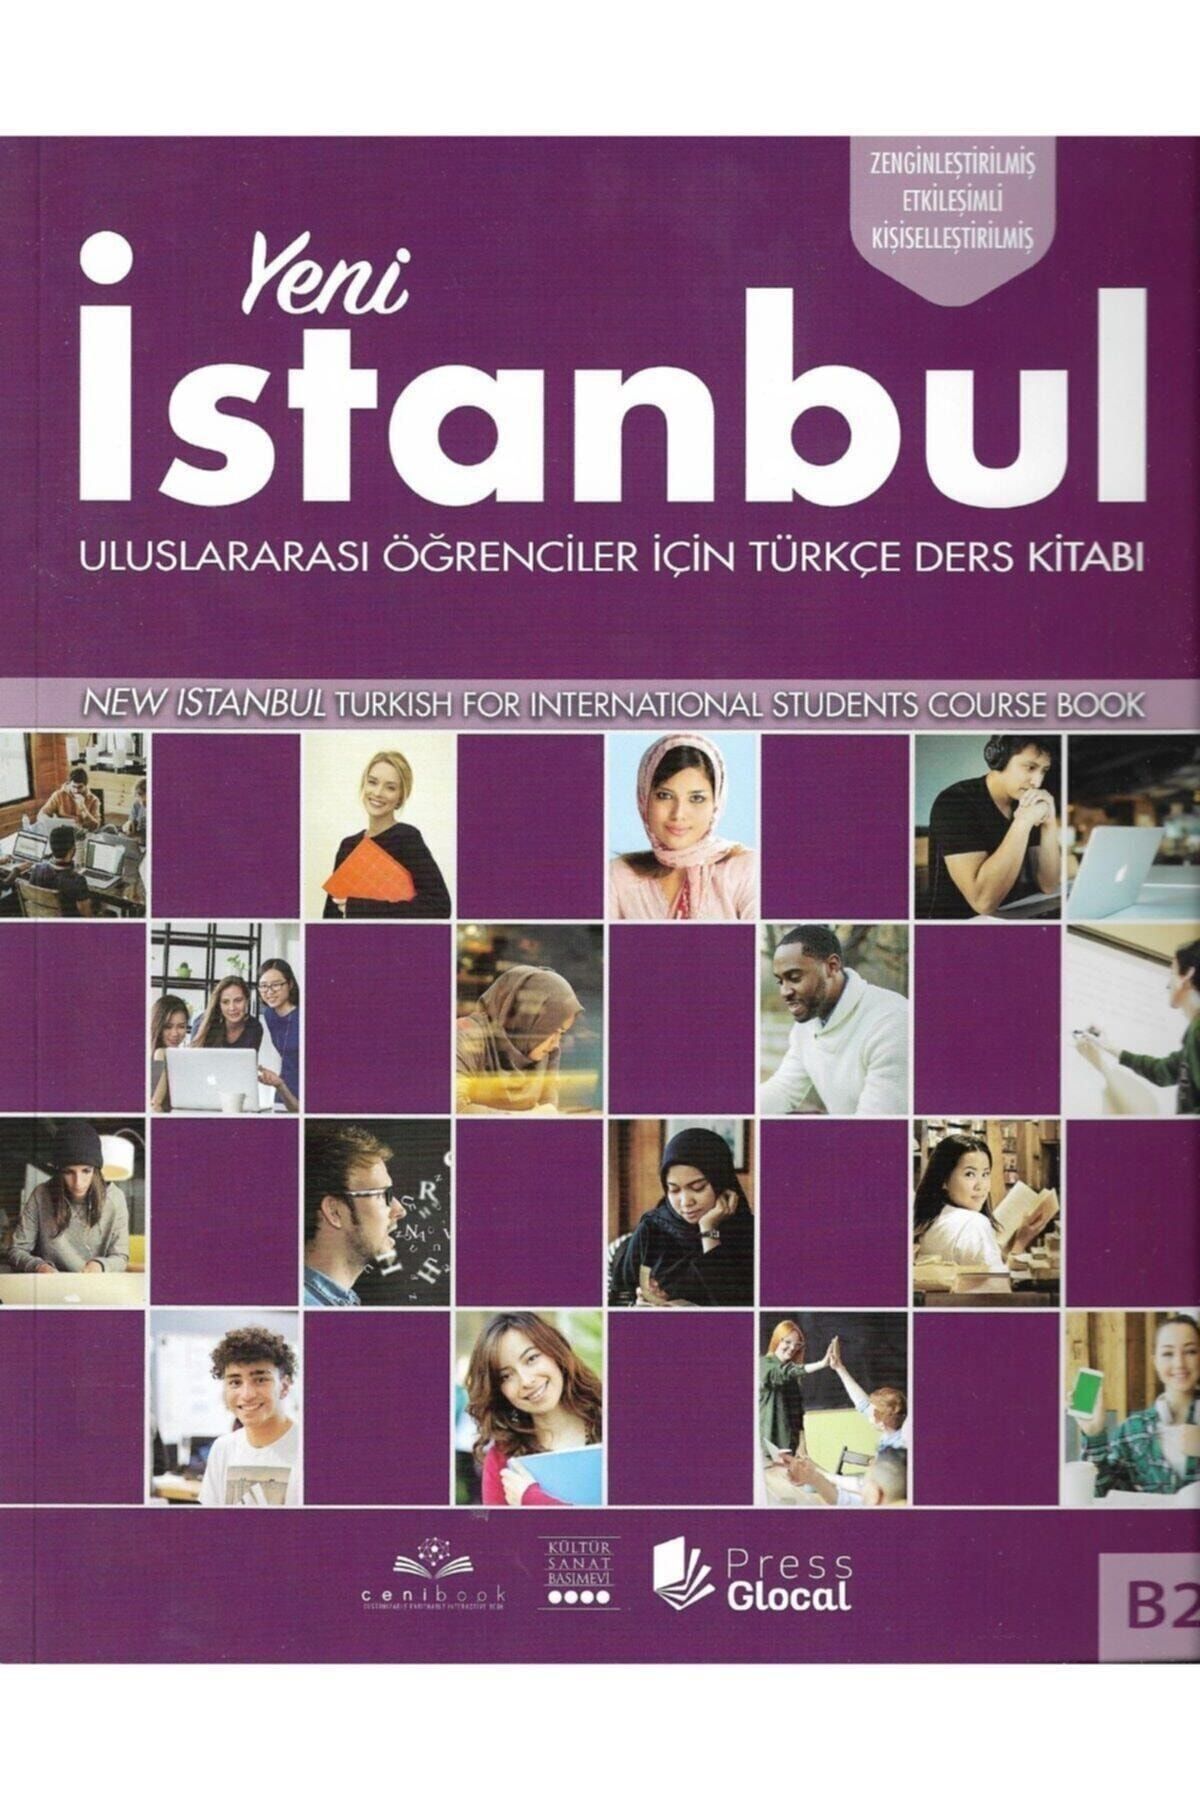 Kültür Sanat Basımevi Istanbul Yabancılar Için Türkçe B2 Turkish For Foreigners Beginner Qr Kod Course Book Workbook B2